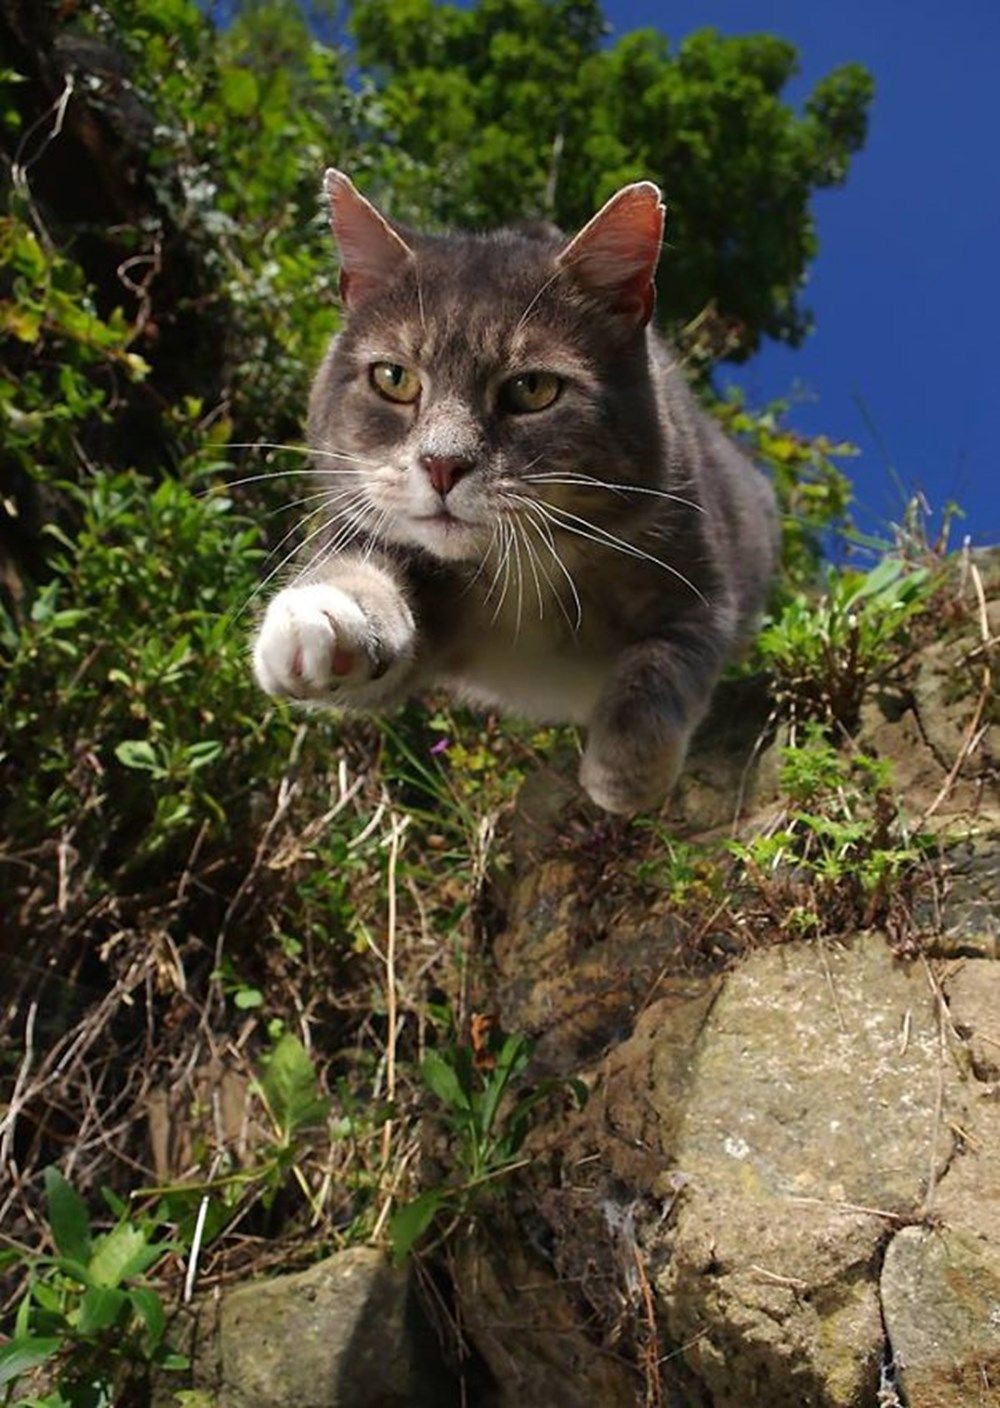 Dünya kediler günü Mükemmel zamanlamayla çekilmiş kedi fotoğrafları!